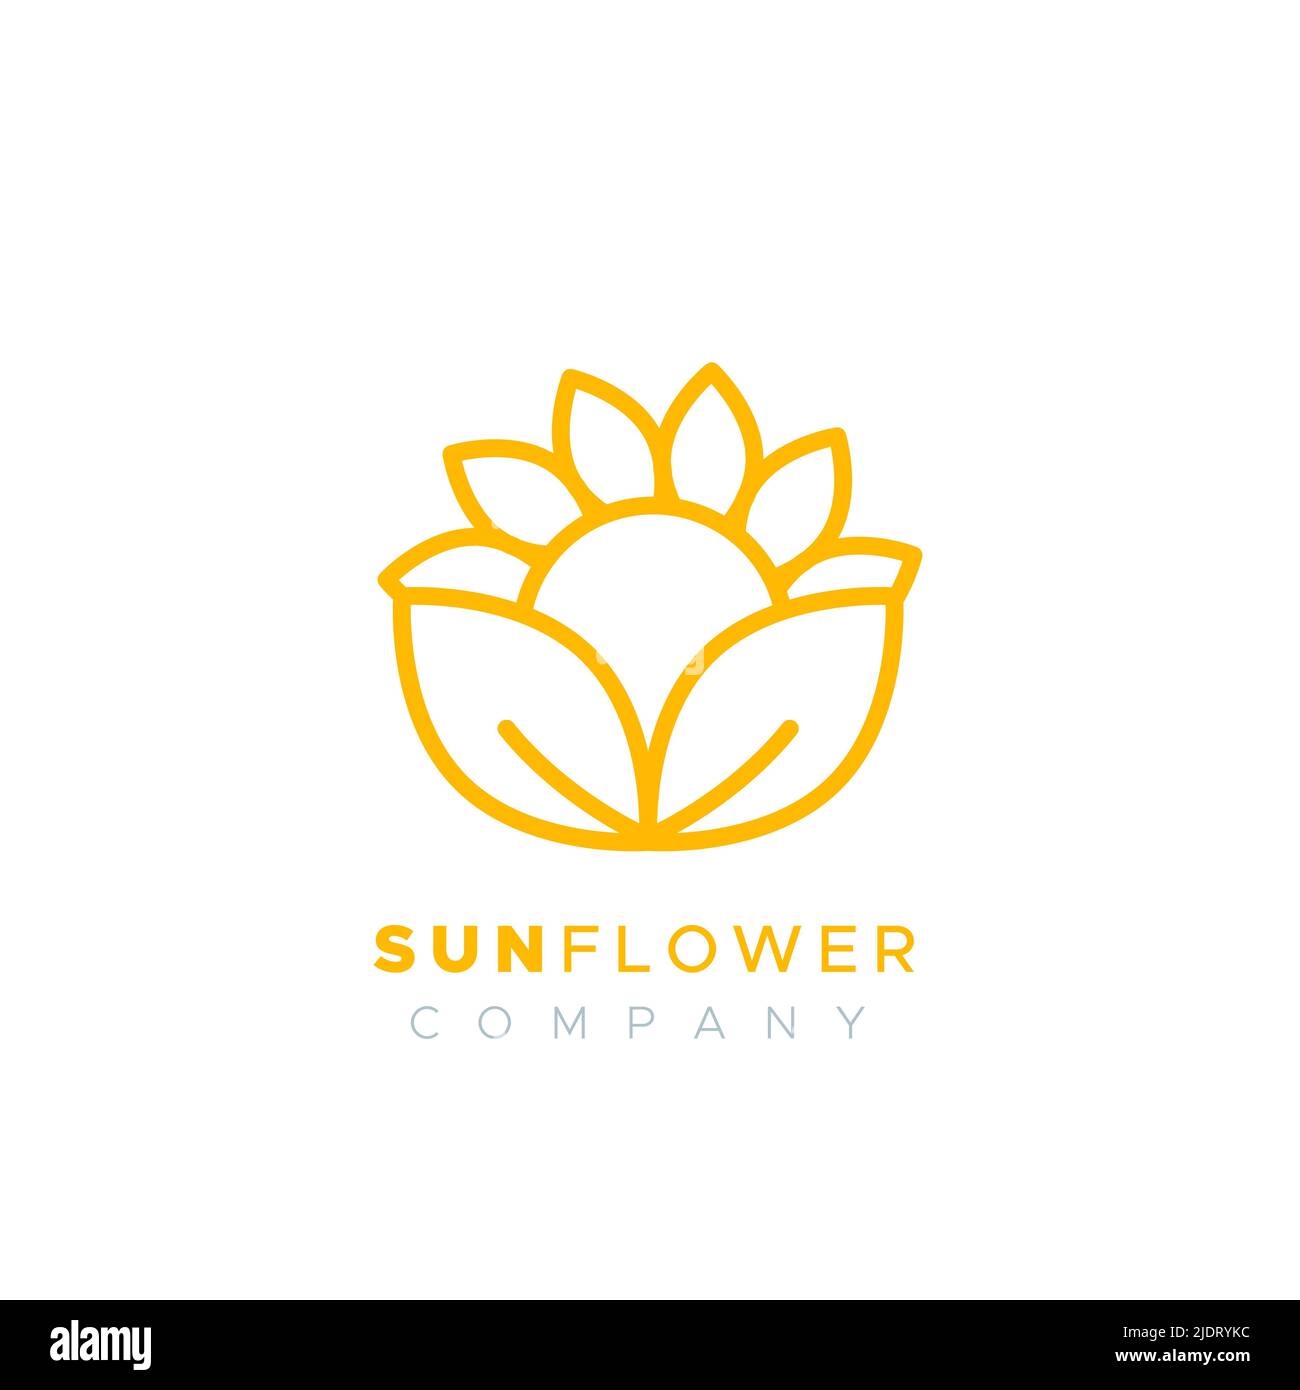 Sunflower company logo. Concept of gardening, solar energy, sunflower oil. Yellow outline. Vector illustration, flat design Stock Vector